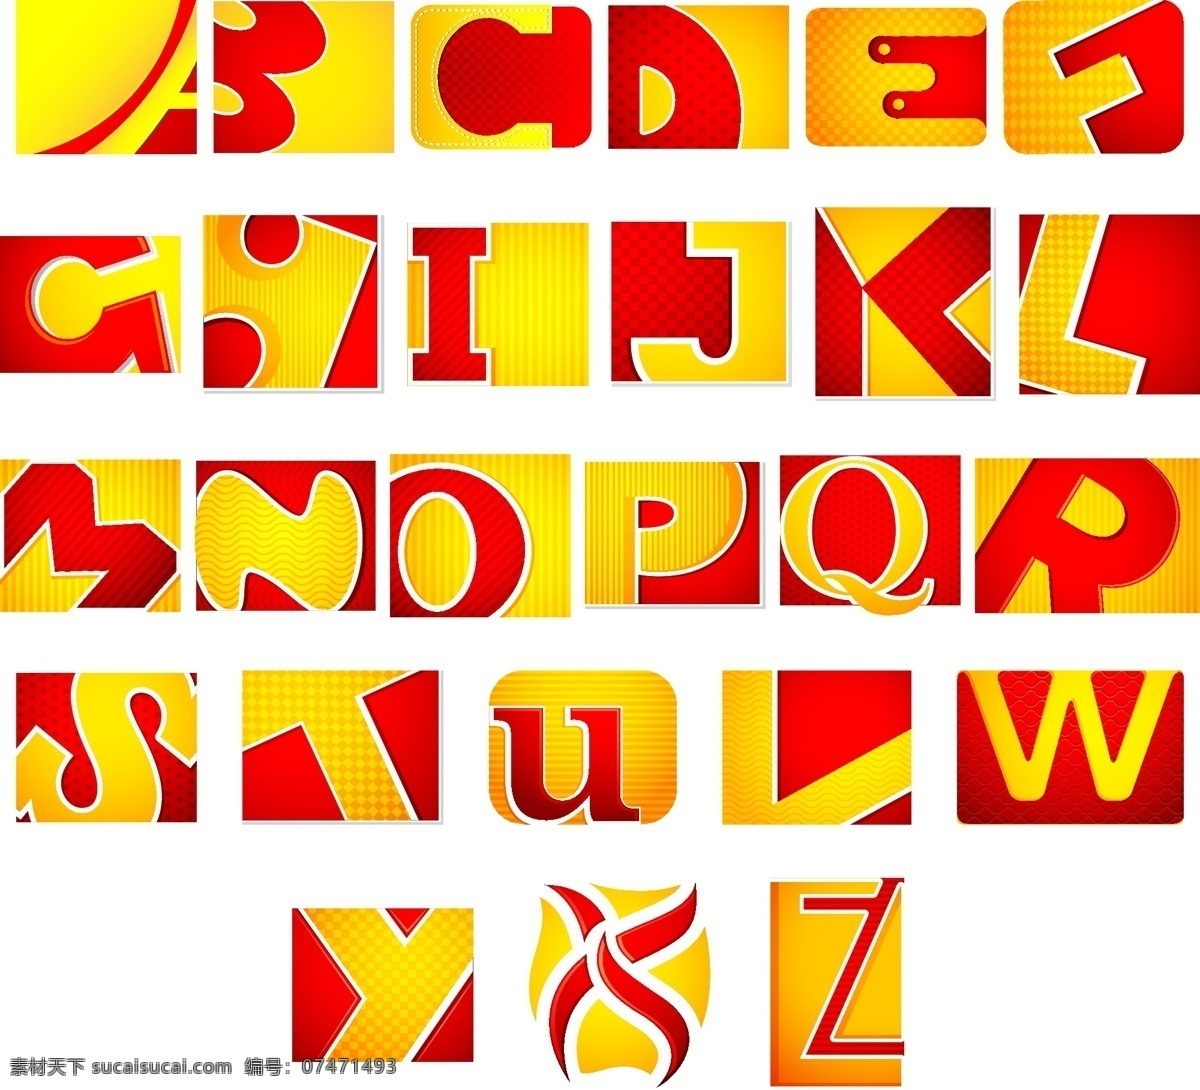 变形字母 创意字母 矢量 立体字母 拼音 时尚字母 艺术字母 英文 创意 字母 模板下载 英文字体 英文艺术字 拼音字母 字母设计 梦幻字母 潮流字母 设计字母 字母主题 矢量图